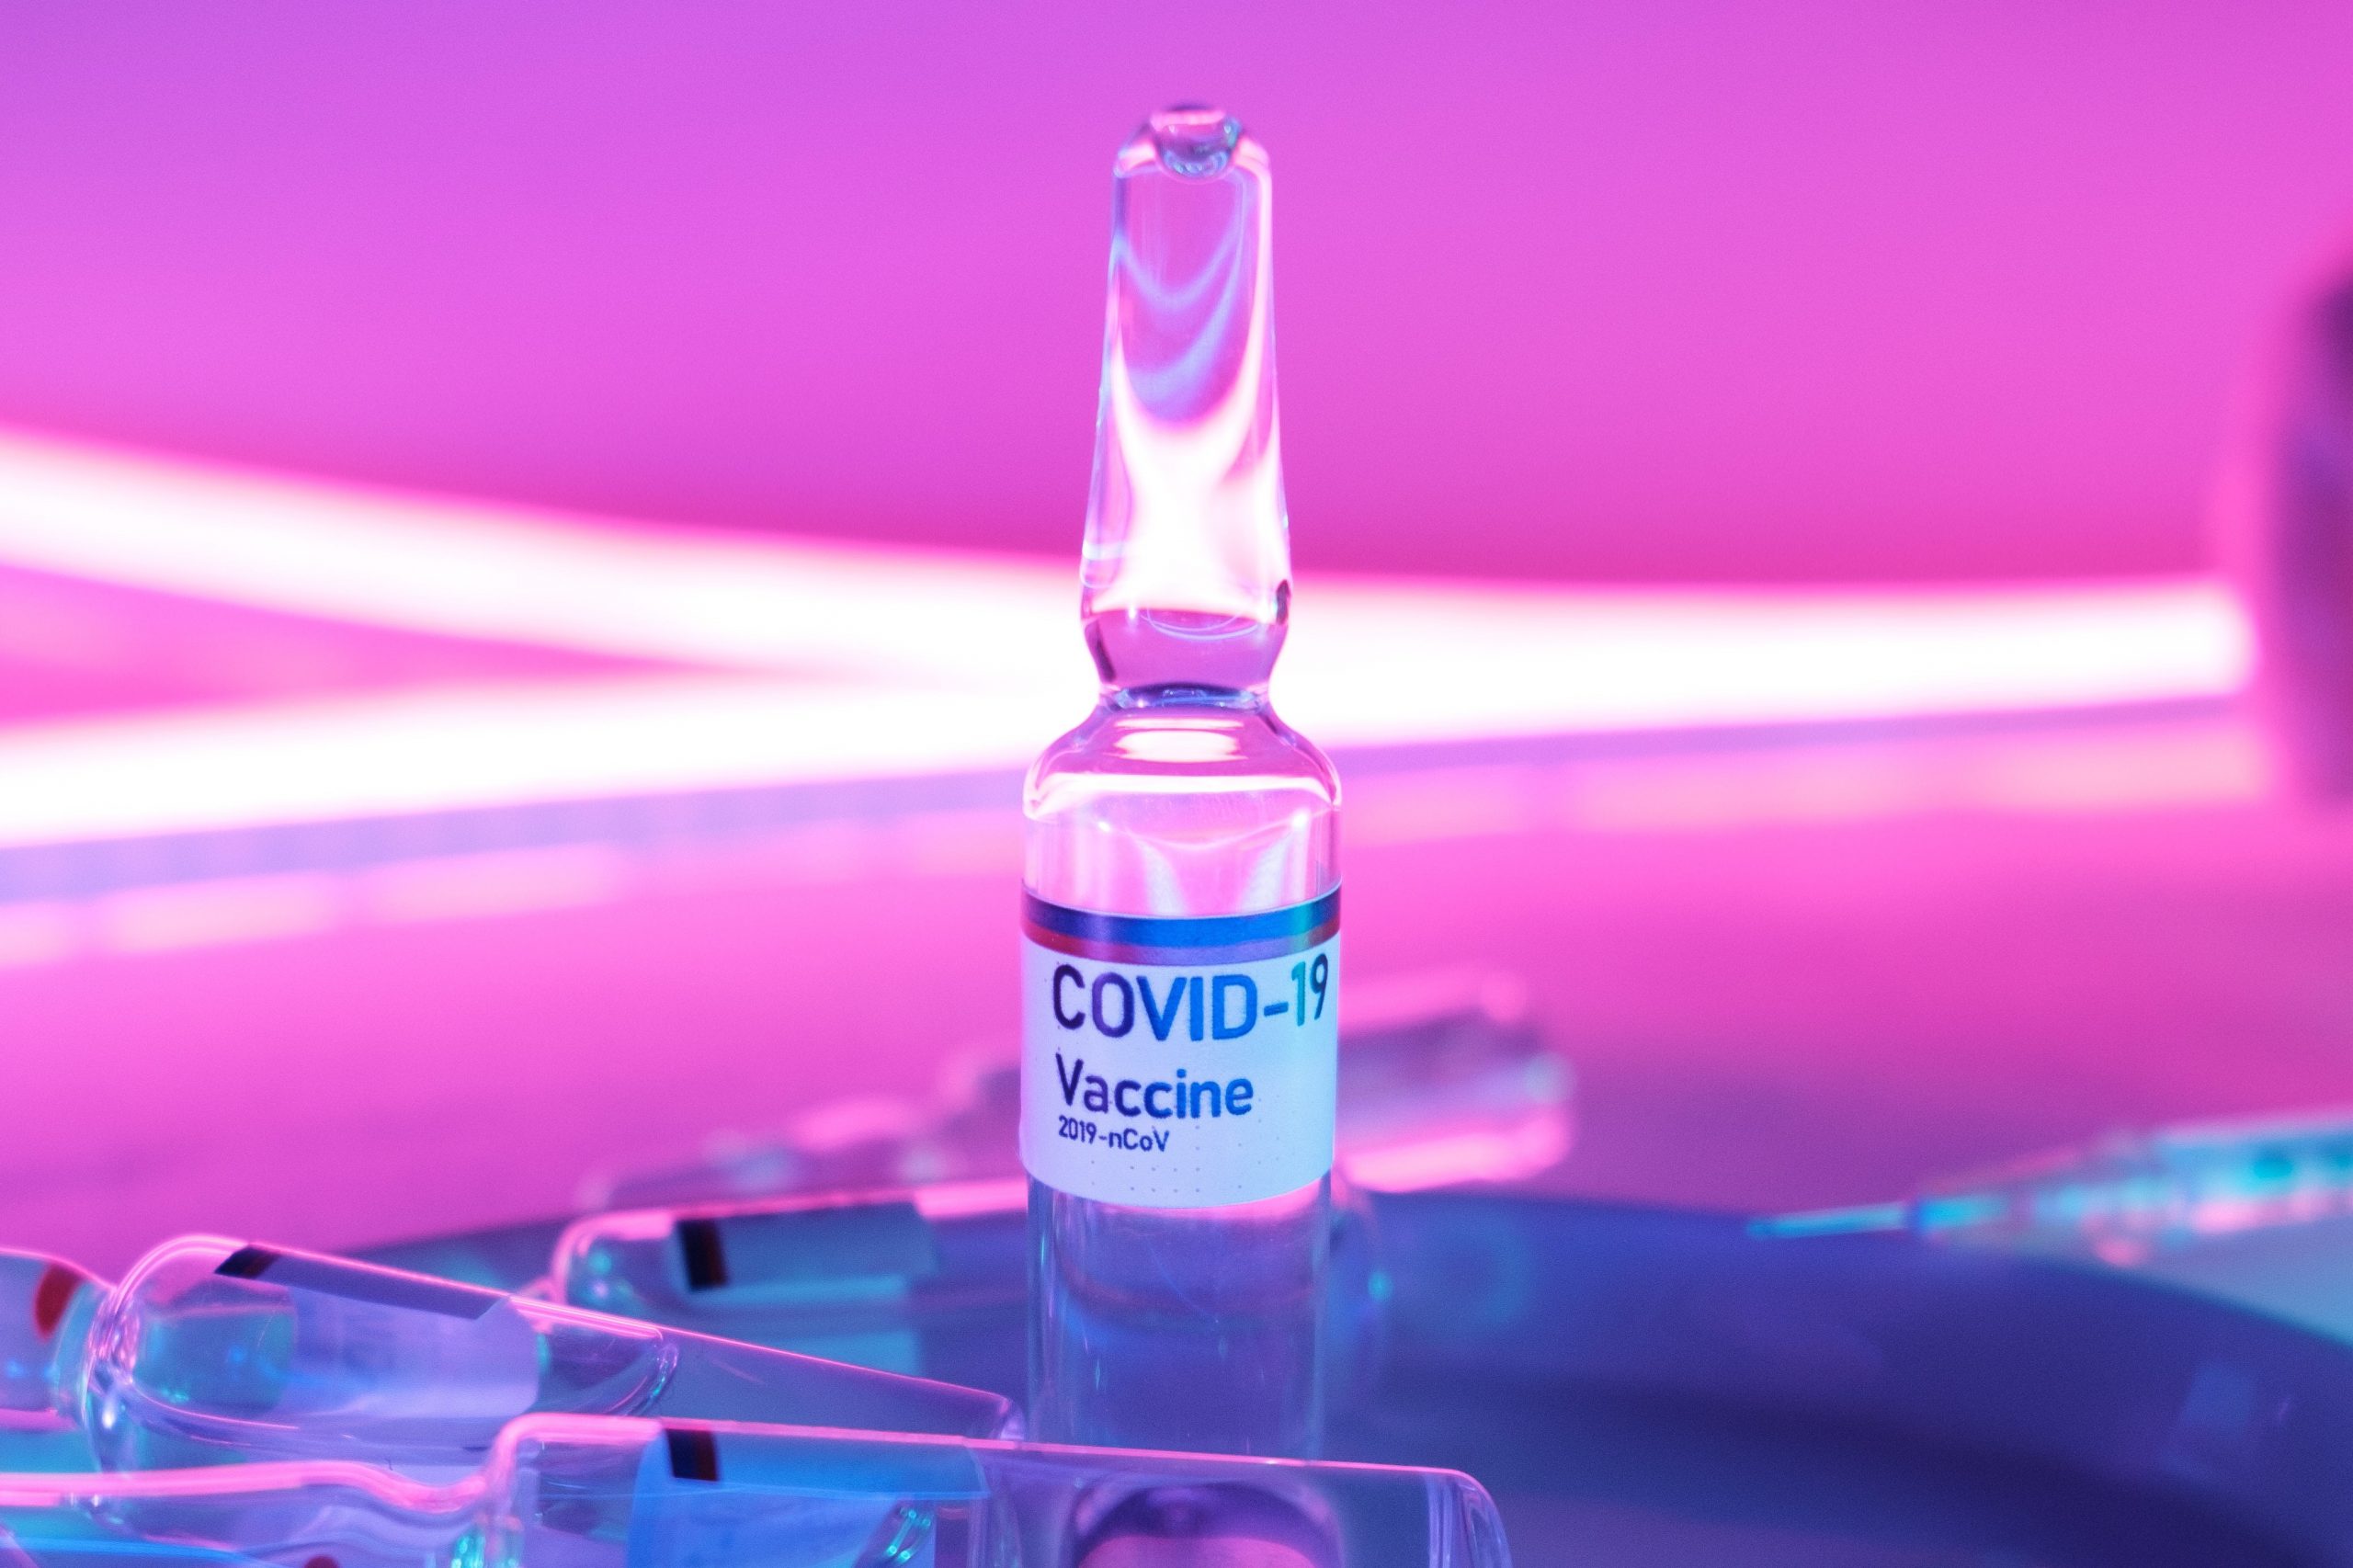 Вид вакцины от COVID-19, который может «скоро исчезнуть», по словам эксперта